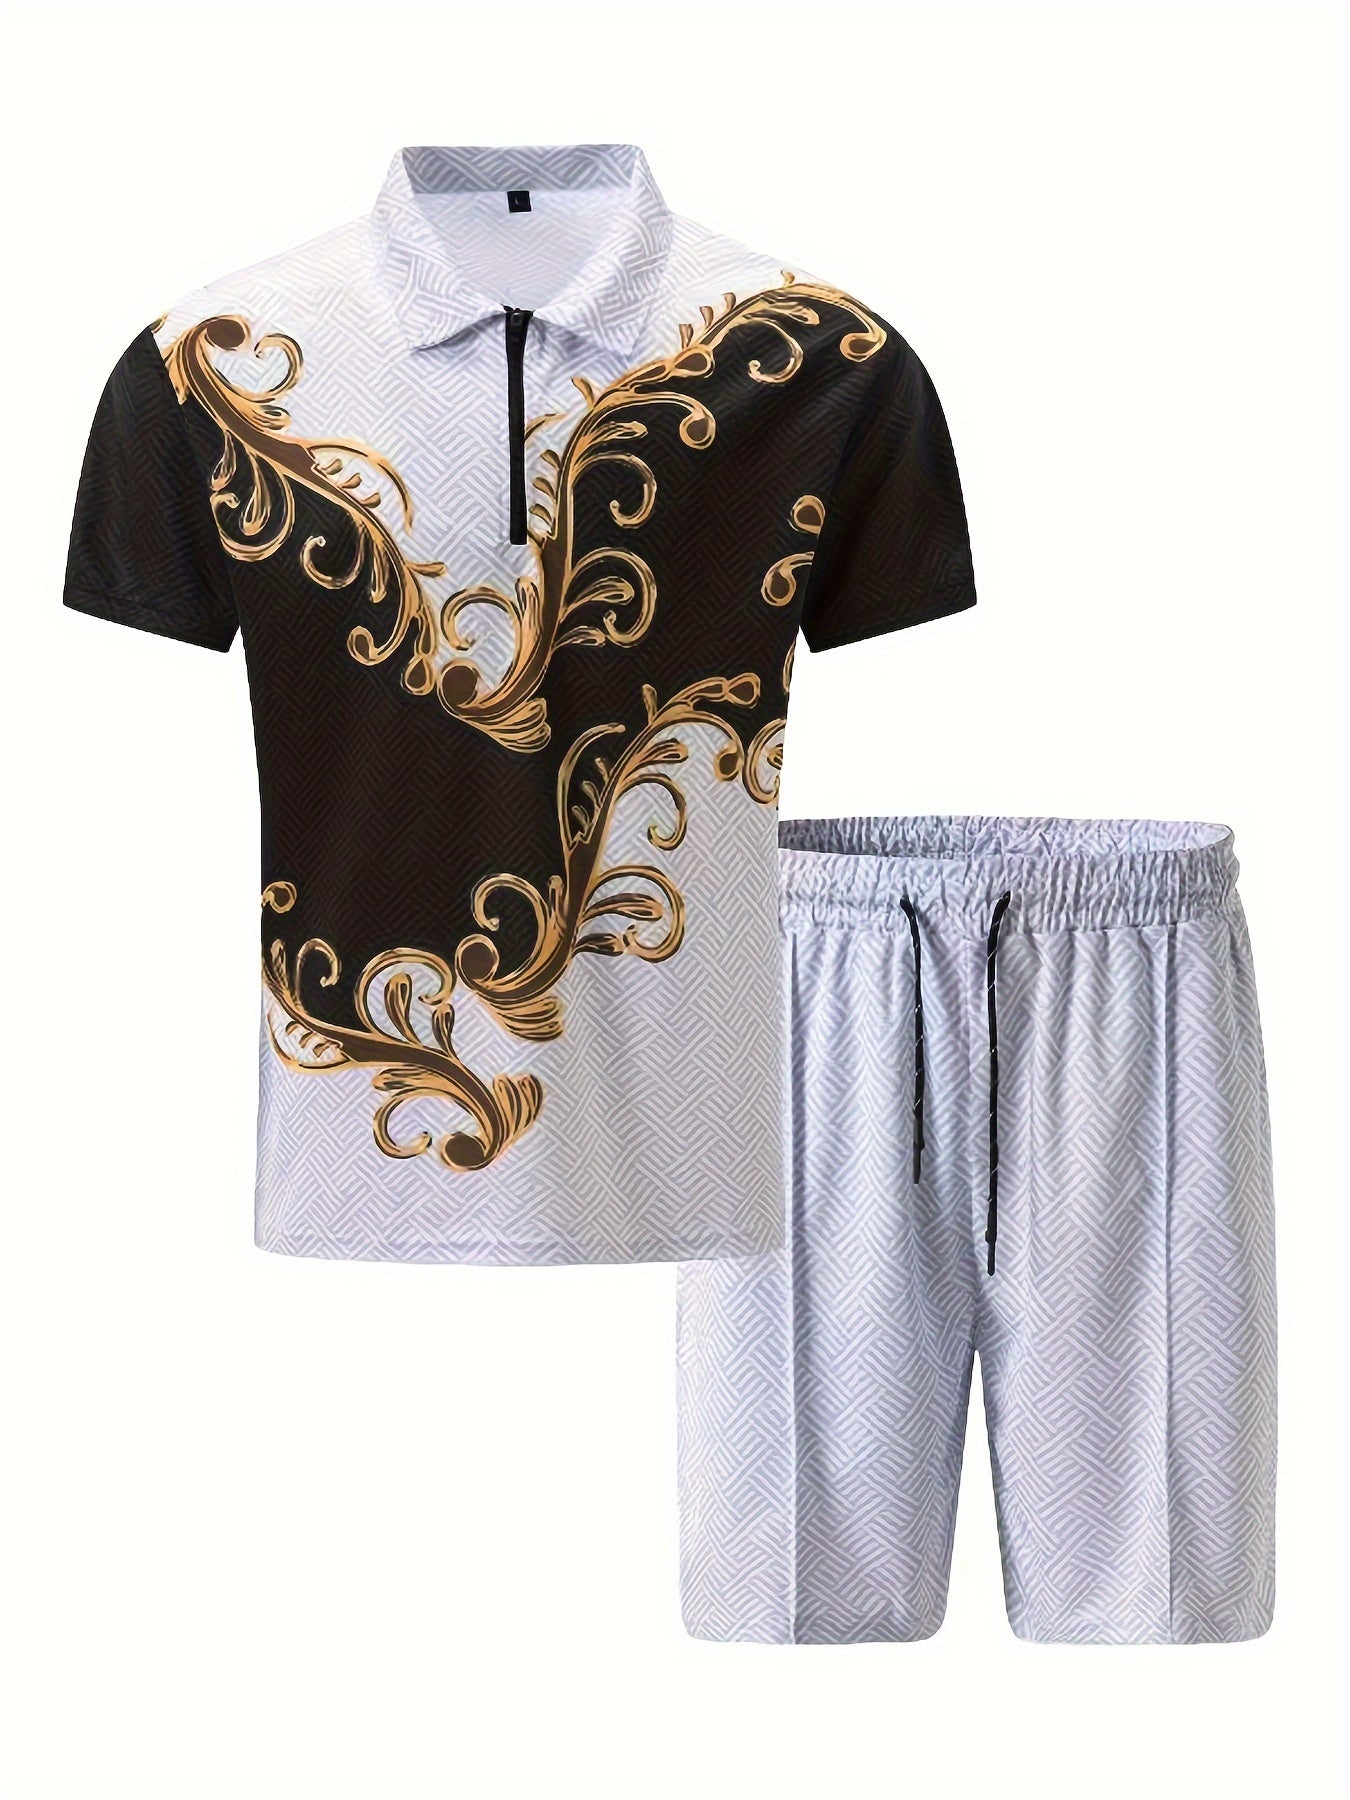 Exquisite Pattern, Herren 2-teilige Outfits, Lässiges Bequemes Reißverschluss-Shirt Und Drawstring-Lose Shorts